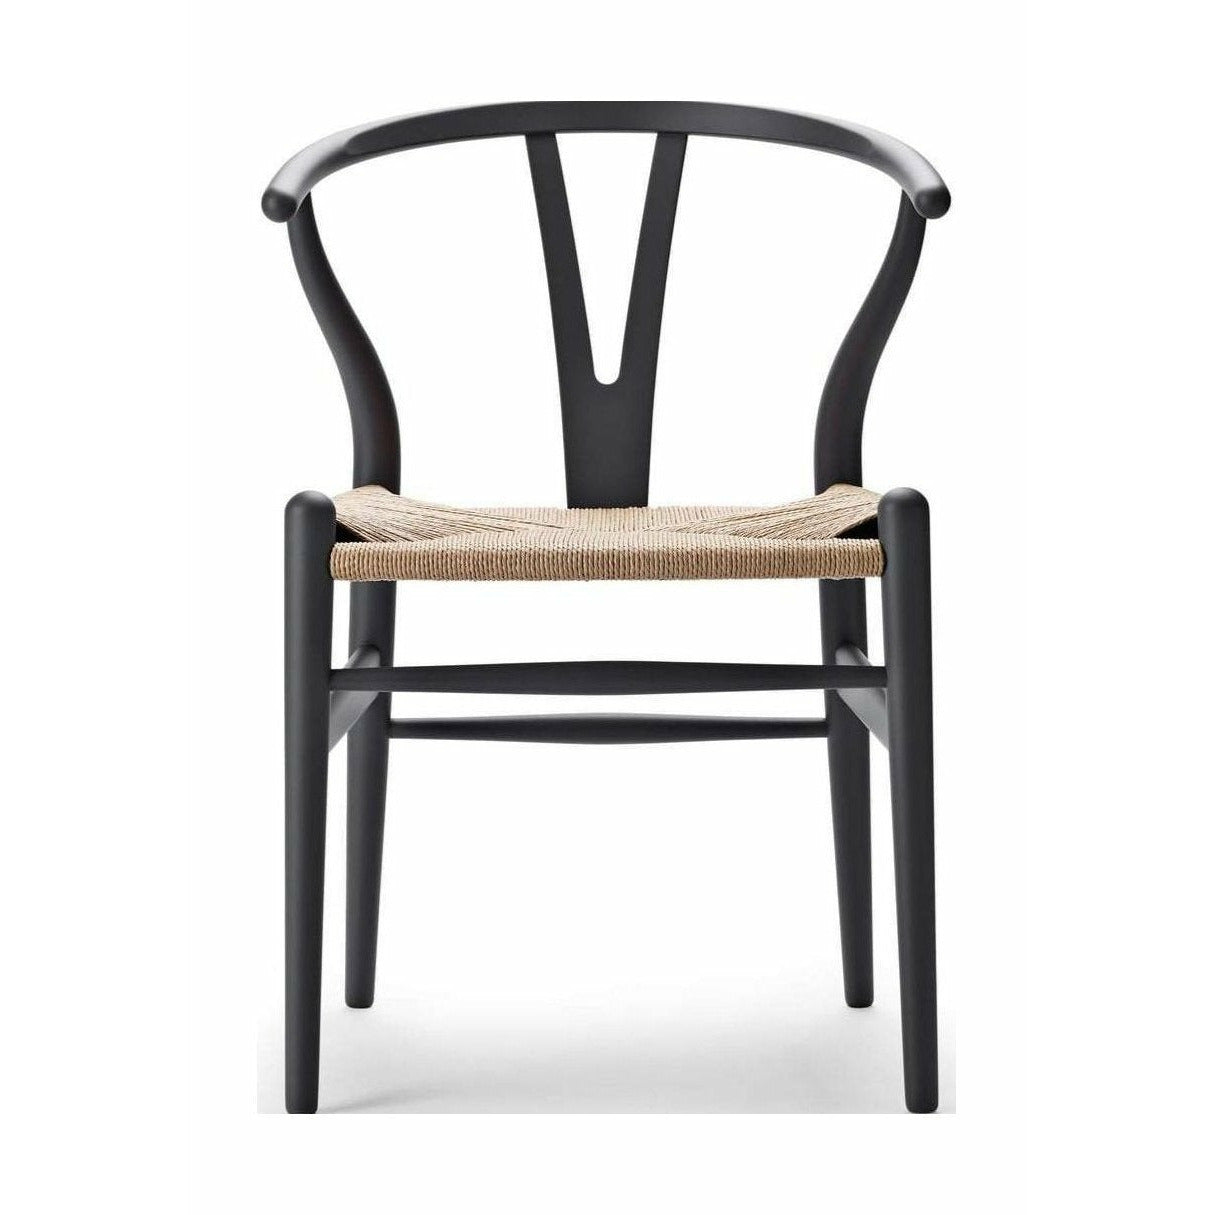 Carl Hansen CH24 Wishbone krzesło specjalne, edycja specjalna Beech, Soft Grey